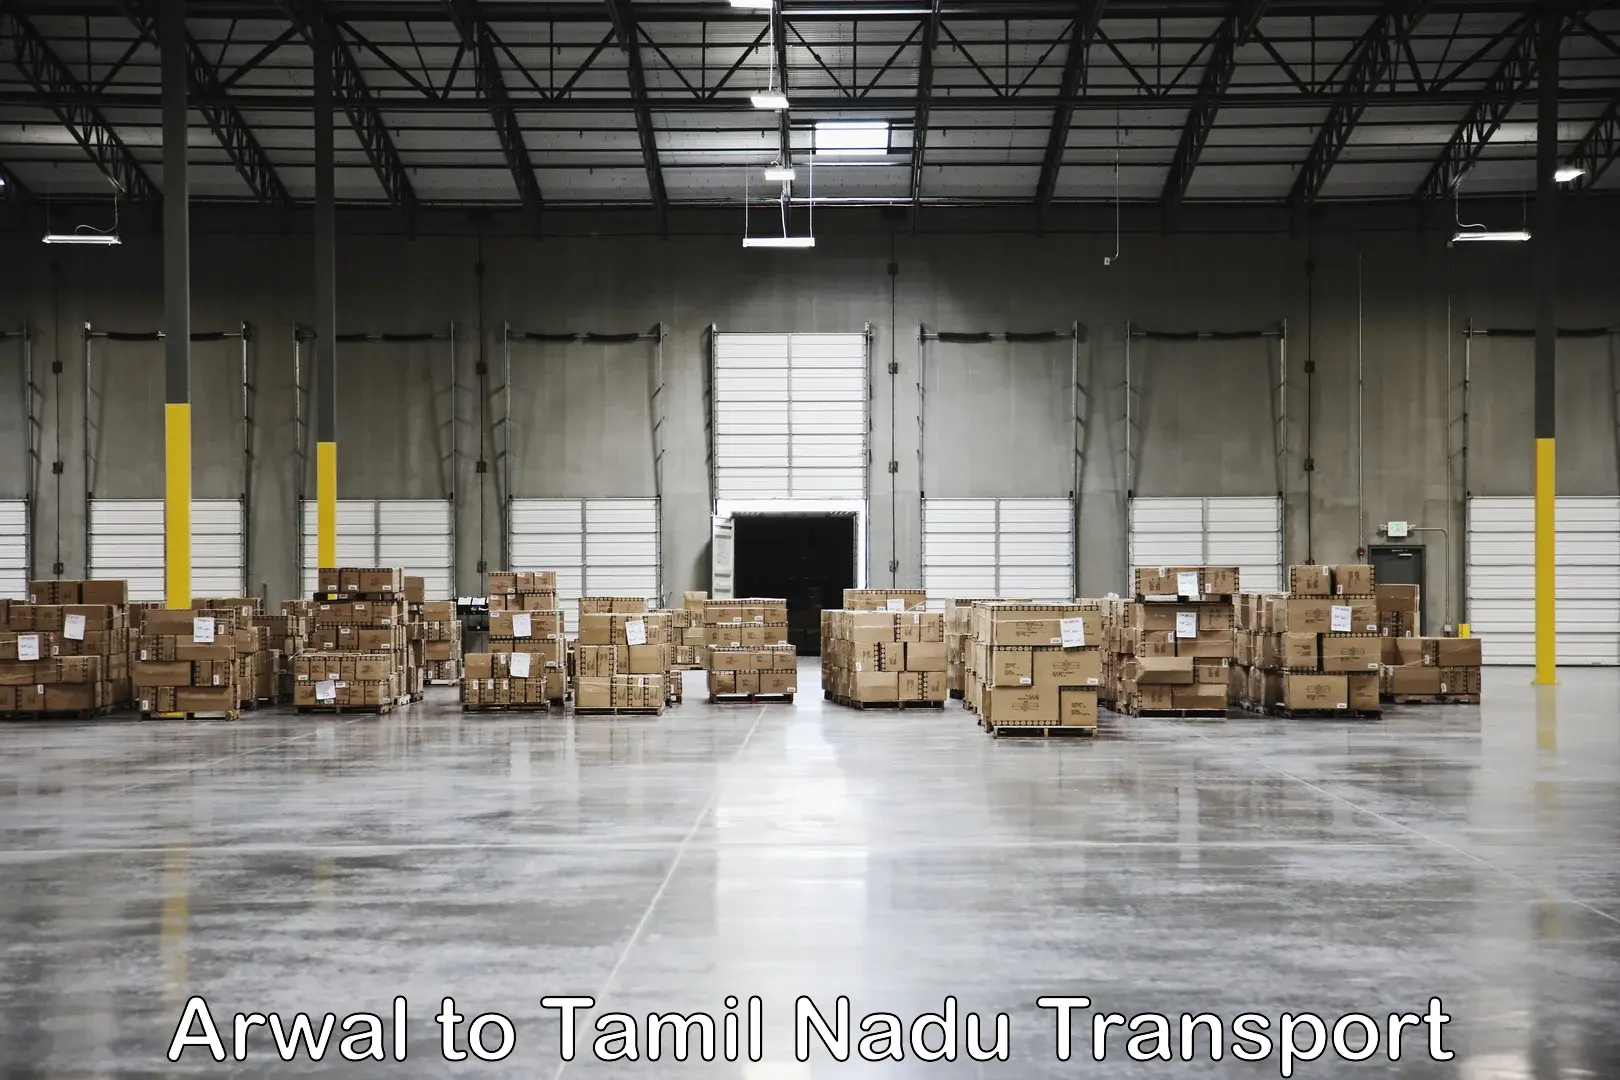 Delivery service Arwal to IIIT Tiruchirappalli